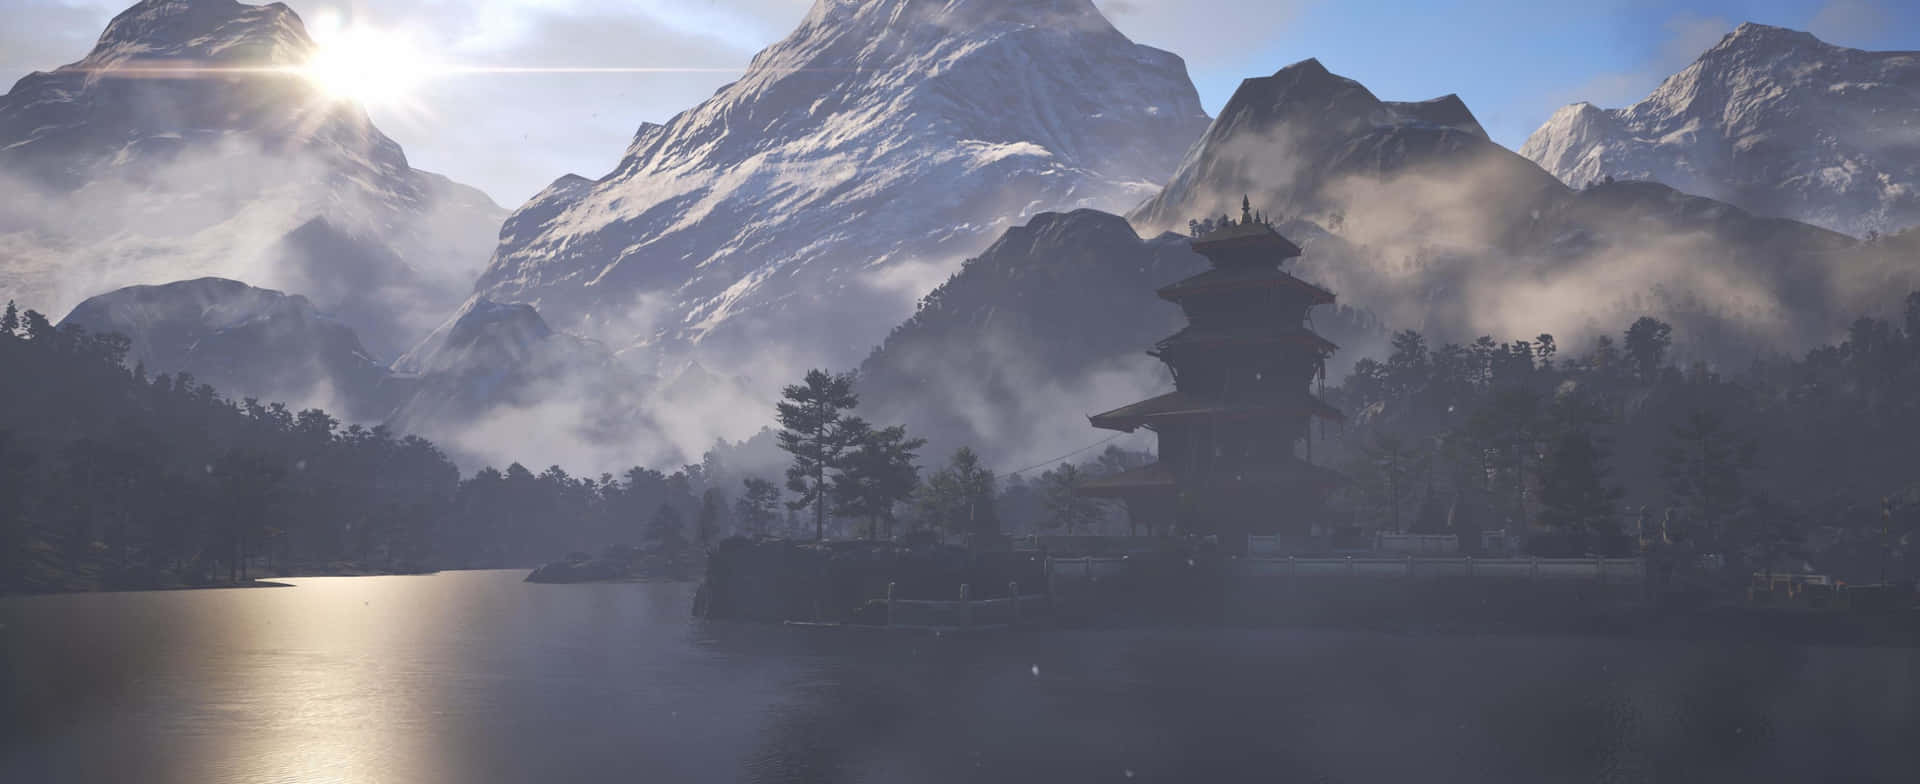 Unaescena De Montaña Con Una Pagoda Y Un Lago